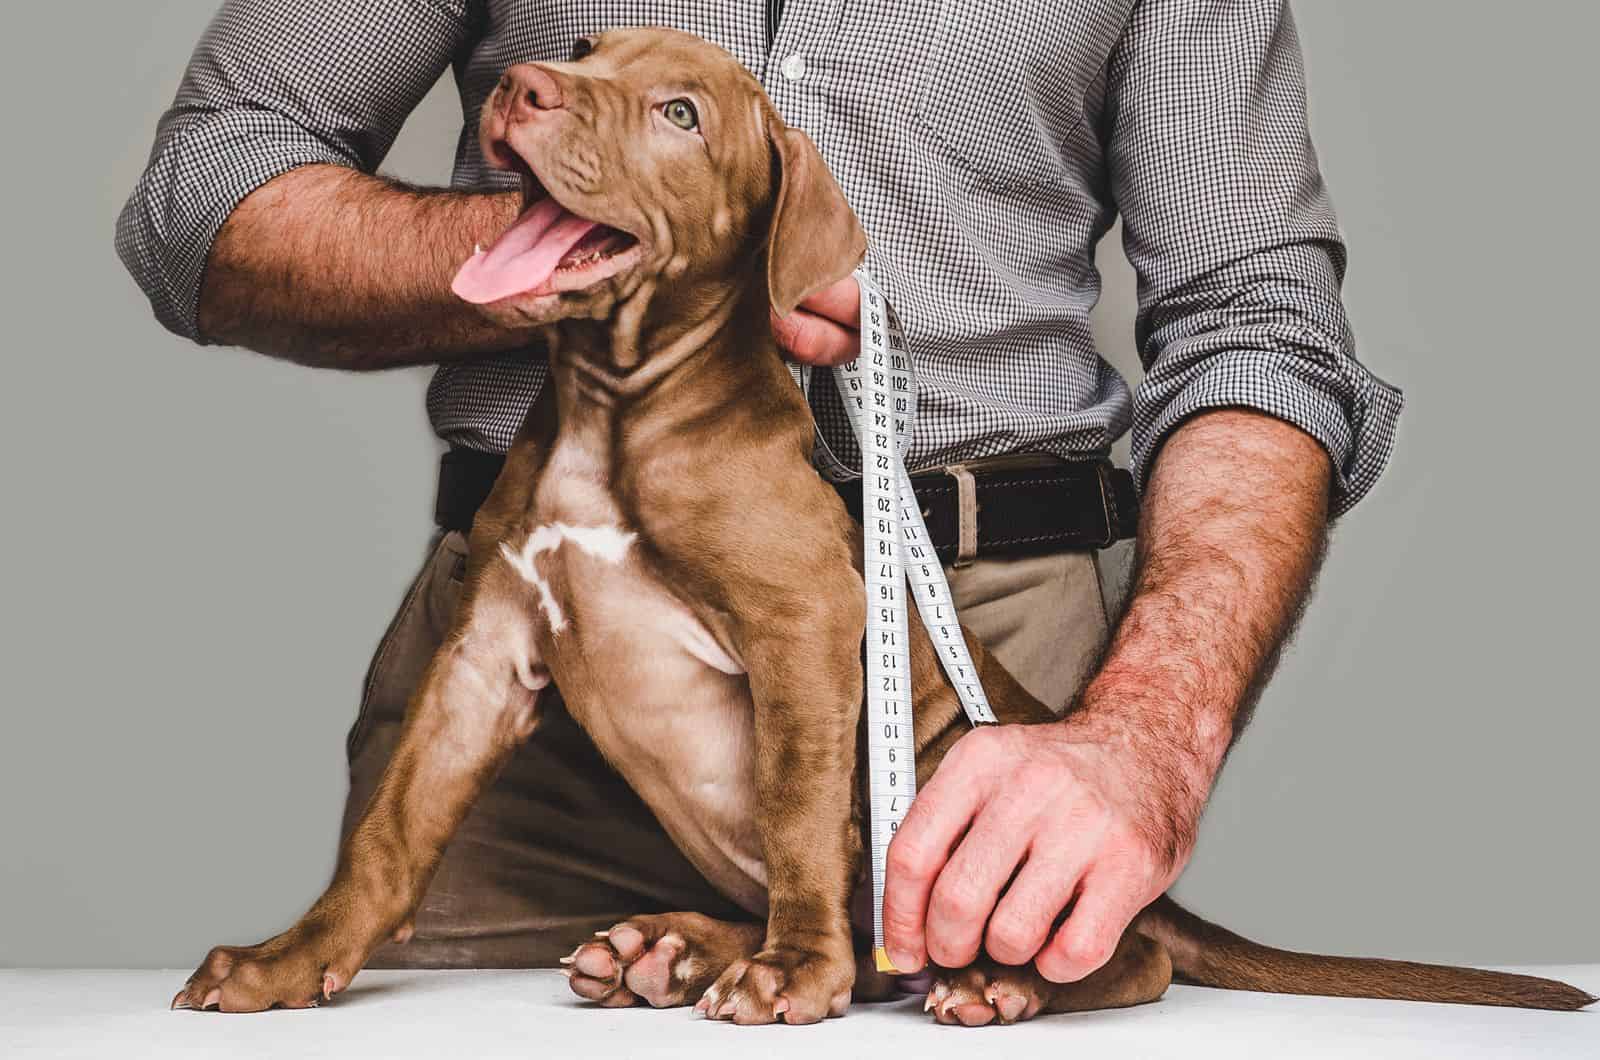 man measuring a dog